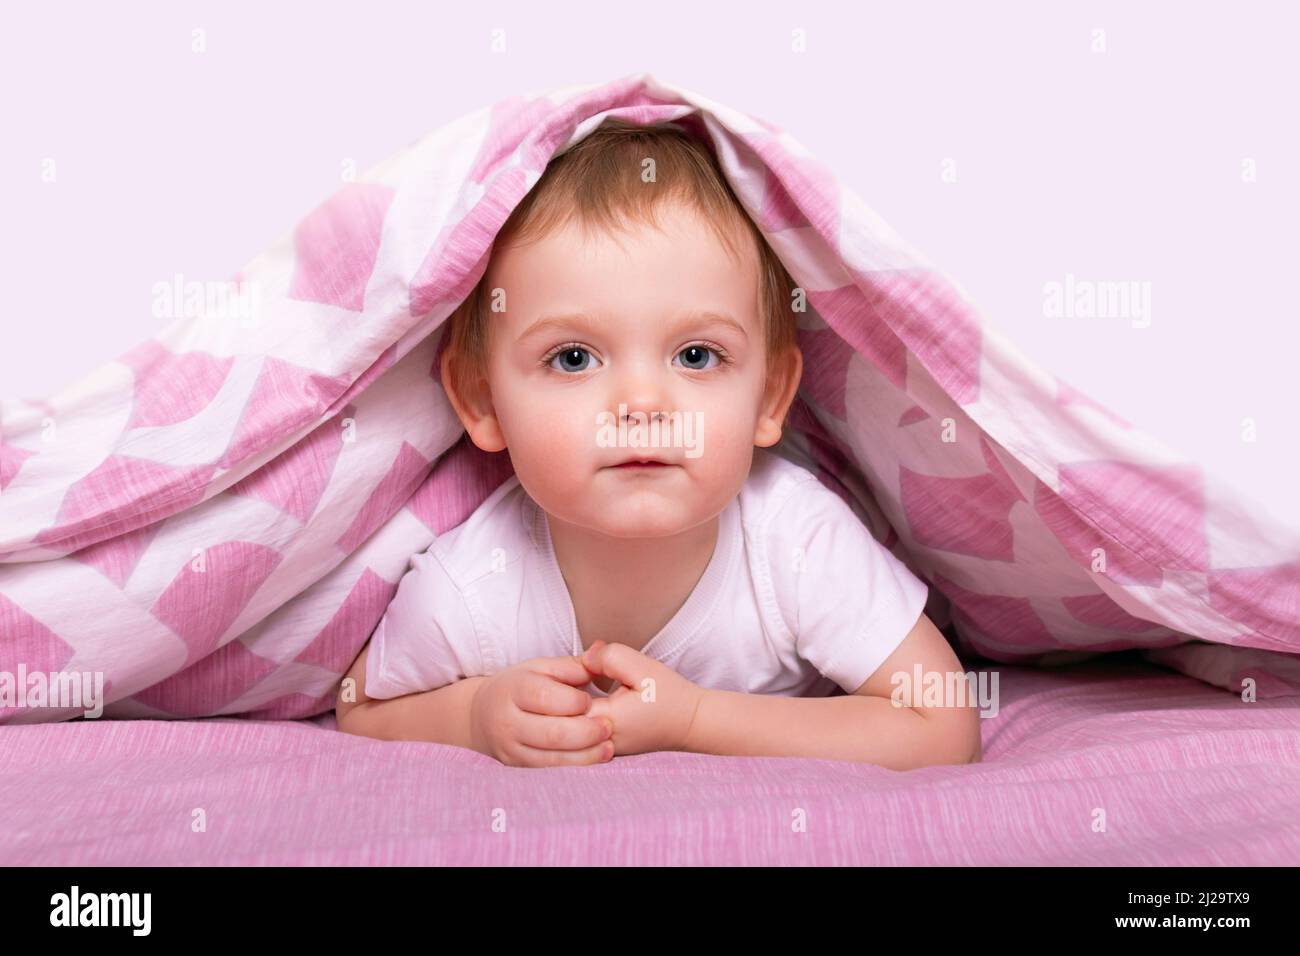 Kleiner kaukasischer Junge, der sich unter einer rosa Decke versteckt. Stockfoto